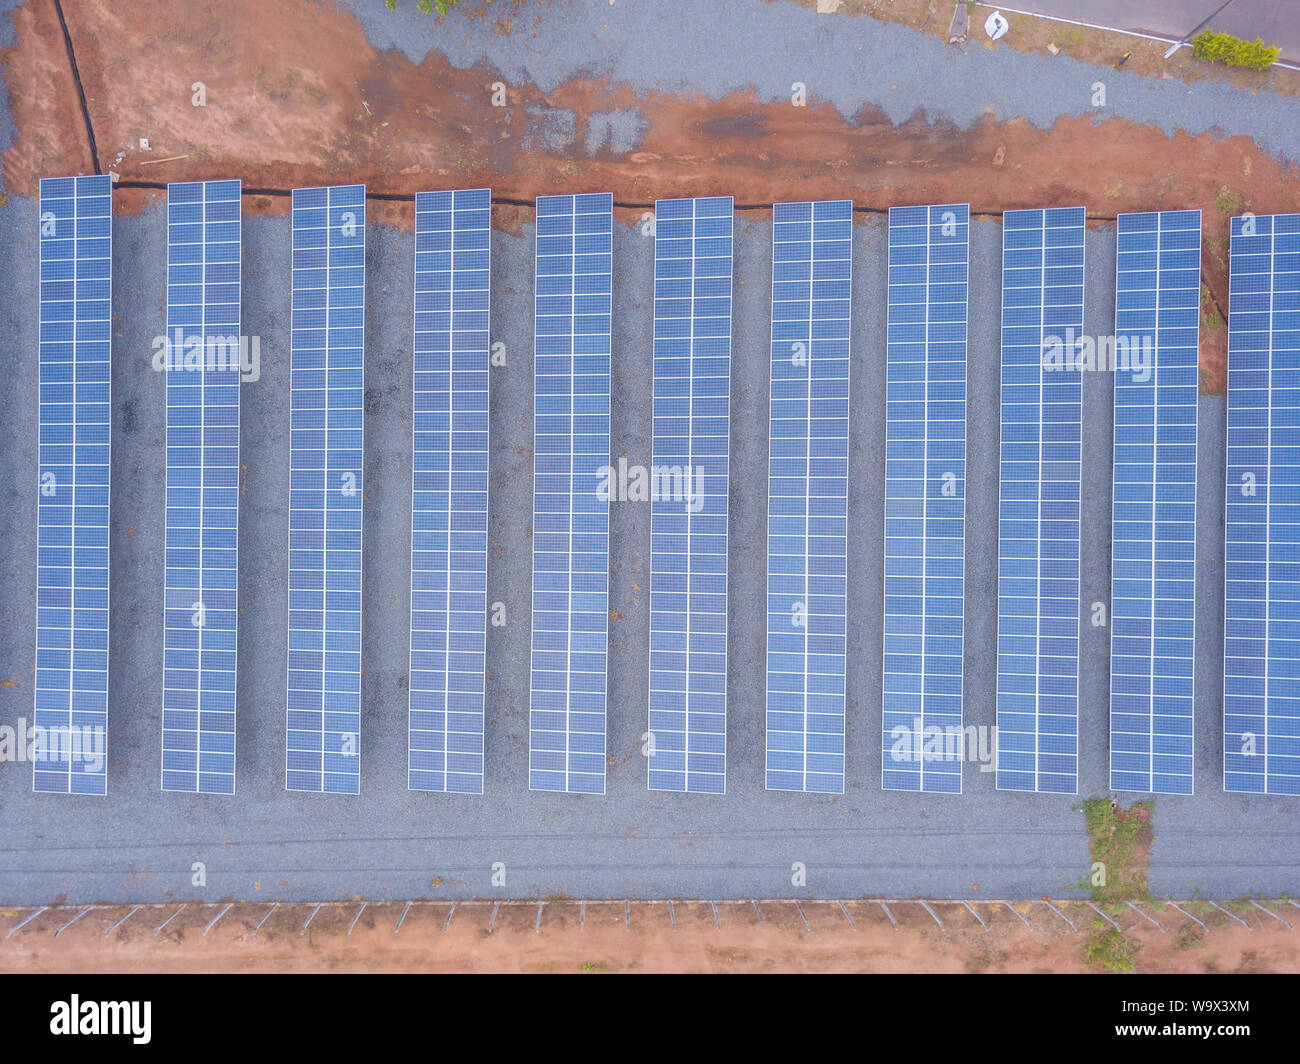 Vue aérienne de l'usine de panneaux solaires à l'aide de l'énergie propre et renouvelable. Drone abattu dans l'état de Mato Grosso, Brésil. Concept de l'environnement, zéro voiture Banque D'Images